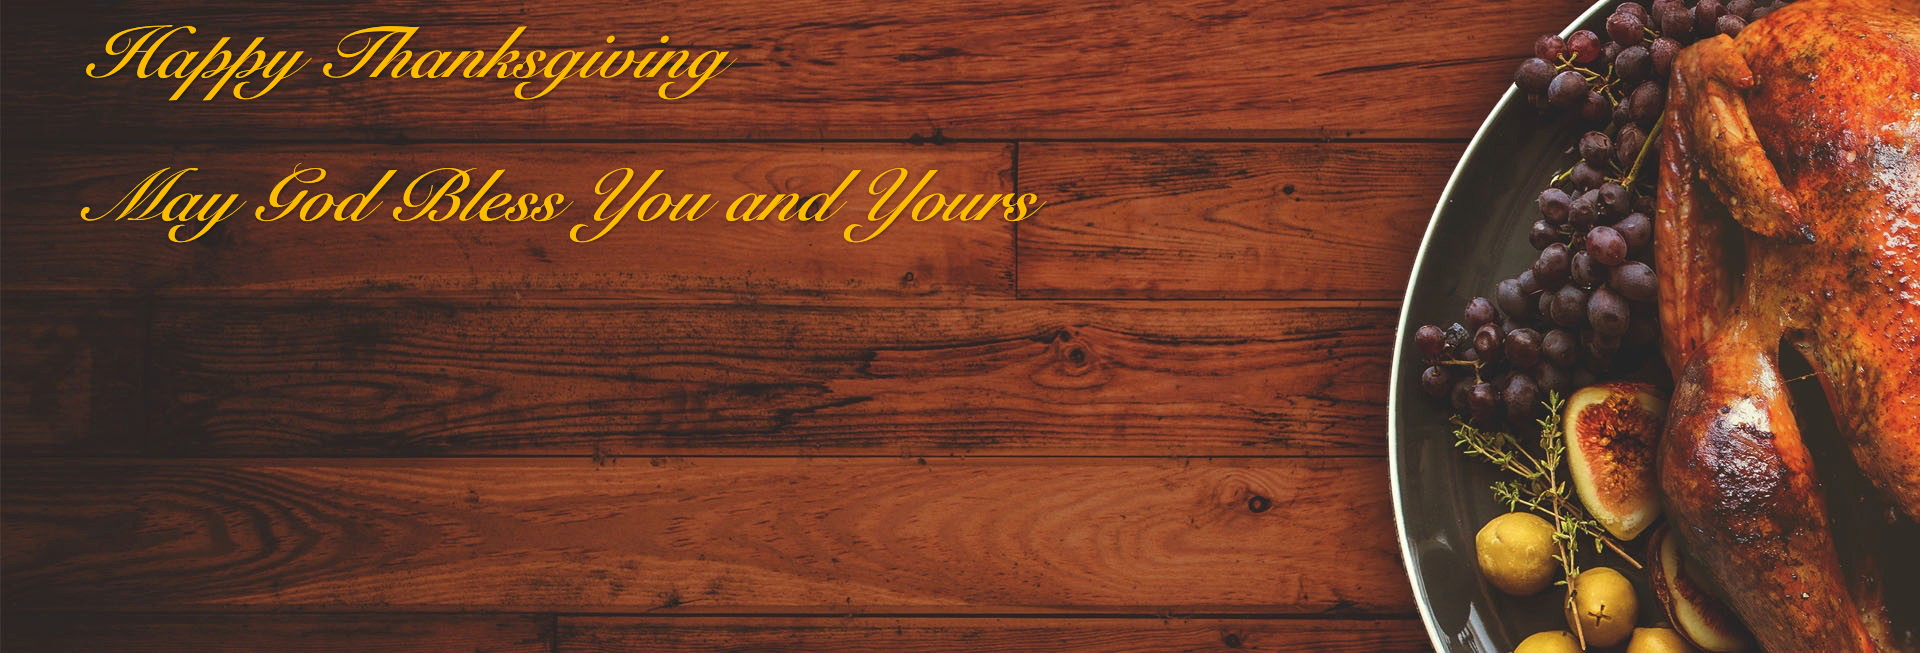 Prayer for Thanksgiving Church Website Banner